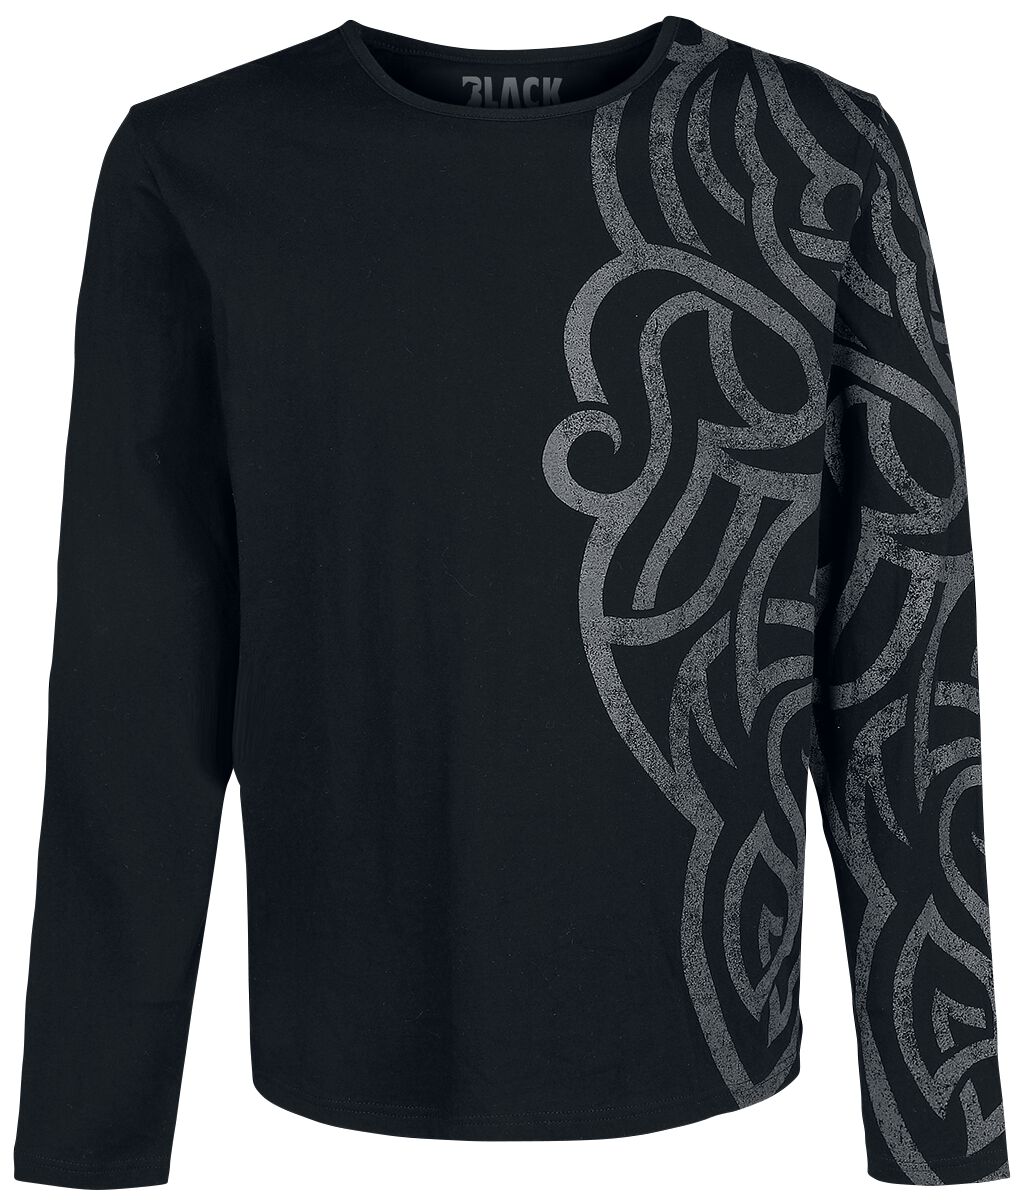 Black Premium by EMP Langarmshirt - Langarmshirt mit großem Ornament - XL bis 5XL - für Männer - Größe 5XL - schwarz